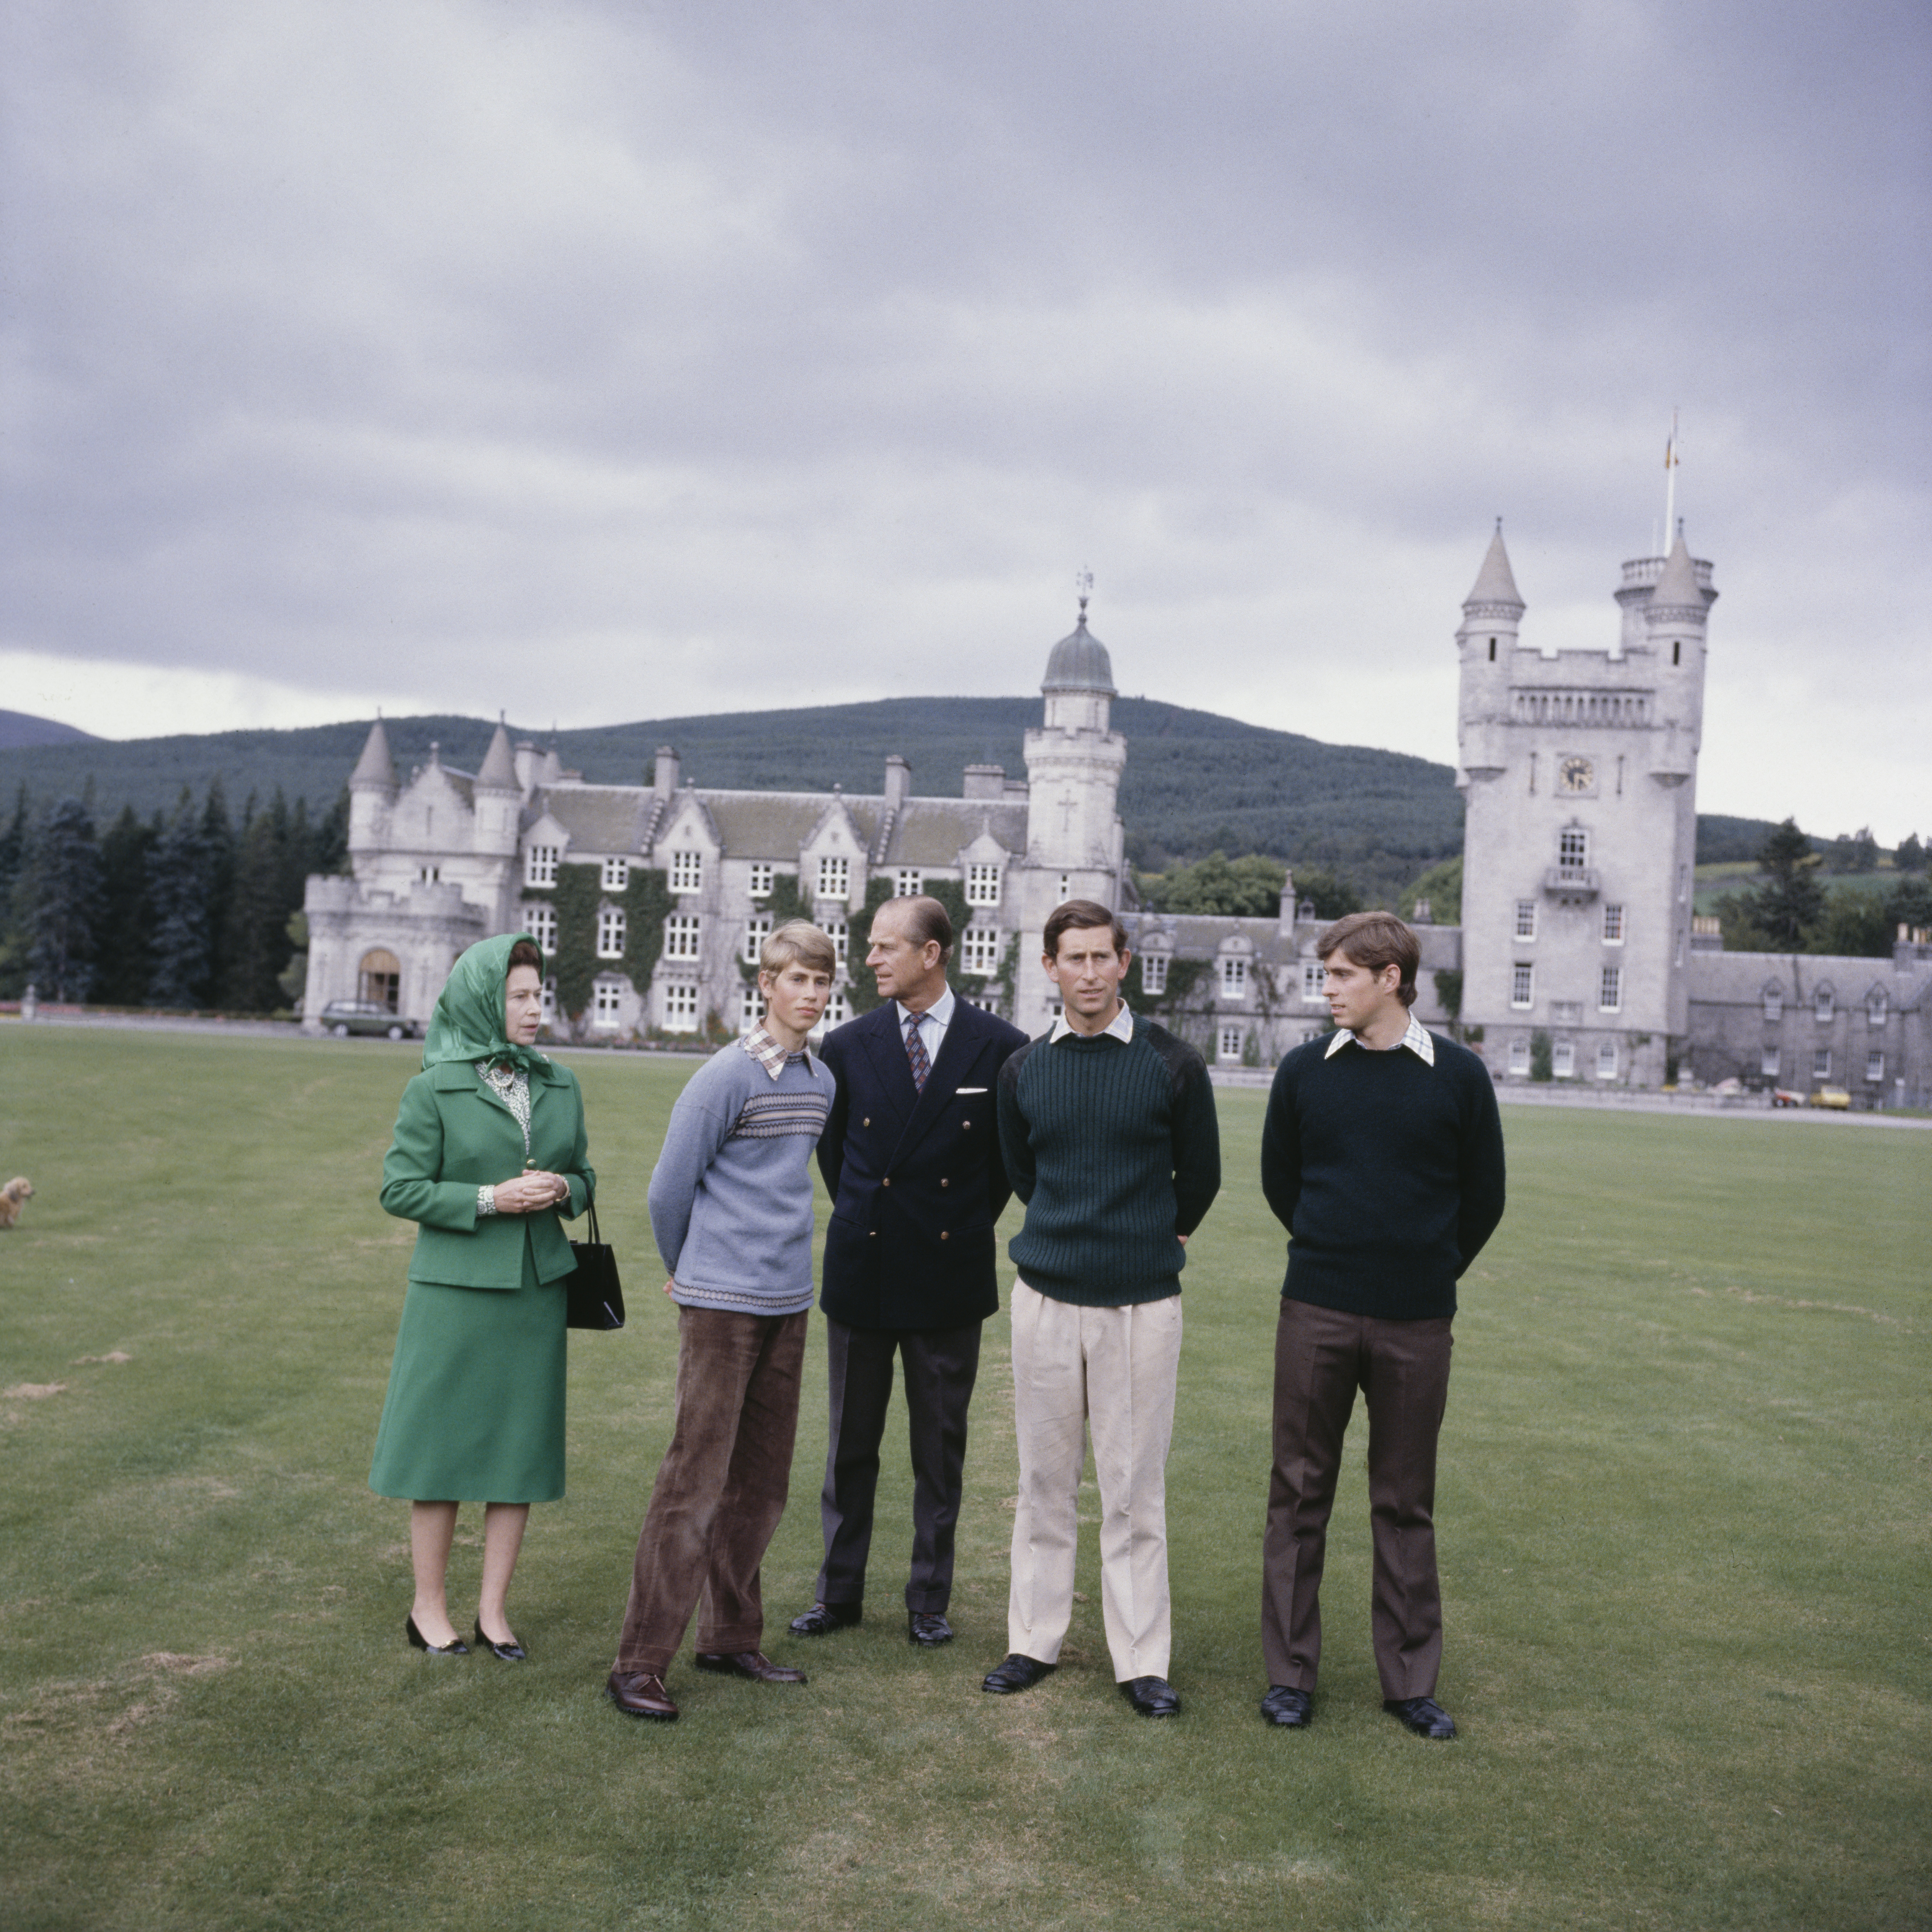 Foto de archivo: La reina Isabel II con el príncipe Felipe, el Duque de Edimburgo (1921 - 2021) y sus hijos el príncipe Eduardo (segundo desde la izquierda), el príncipe Carlos (segundo desde la derecha) y el príncipe Andrés (derecha) en los terrenos del Castillo de Balmoral en Escocia, Reino Unido, el 20 de septiembre de 1979. (Foto de Keystone/Hulton Archive/Getty Images)